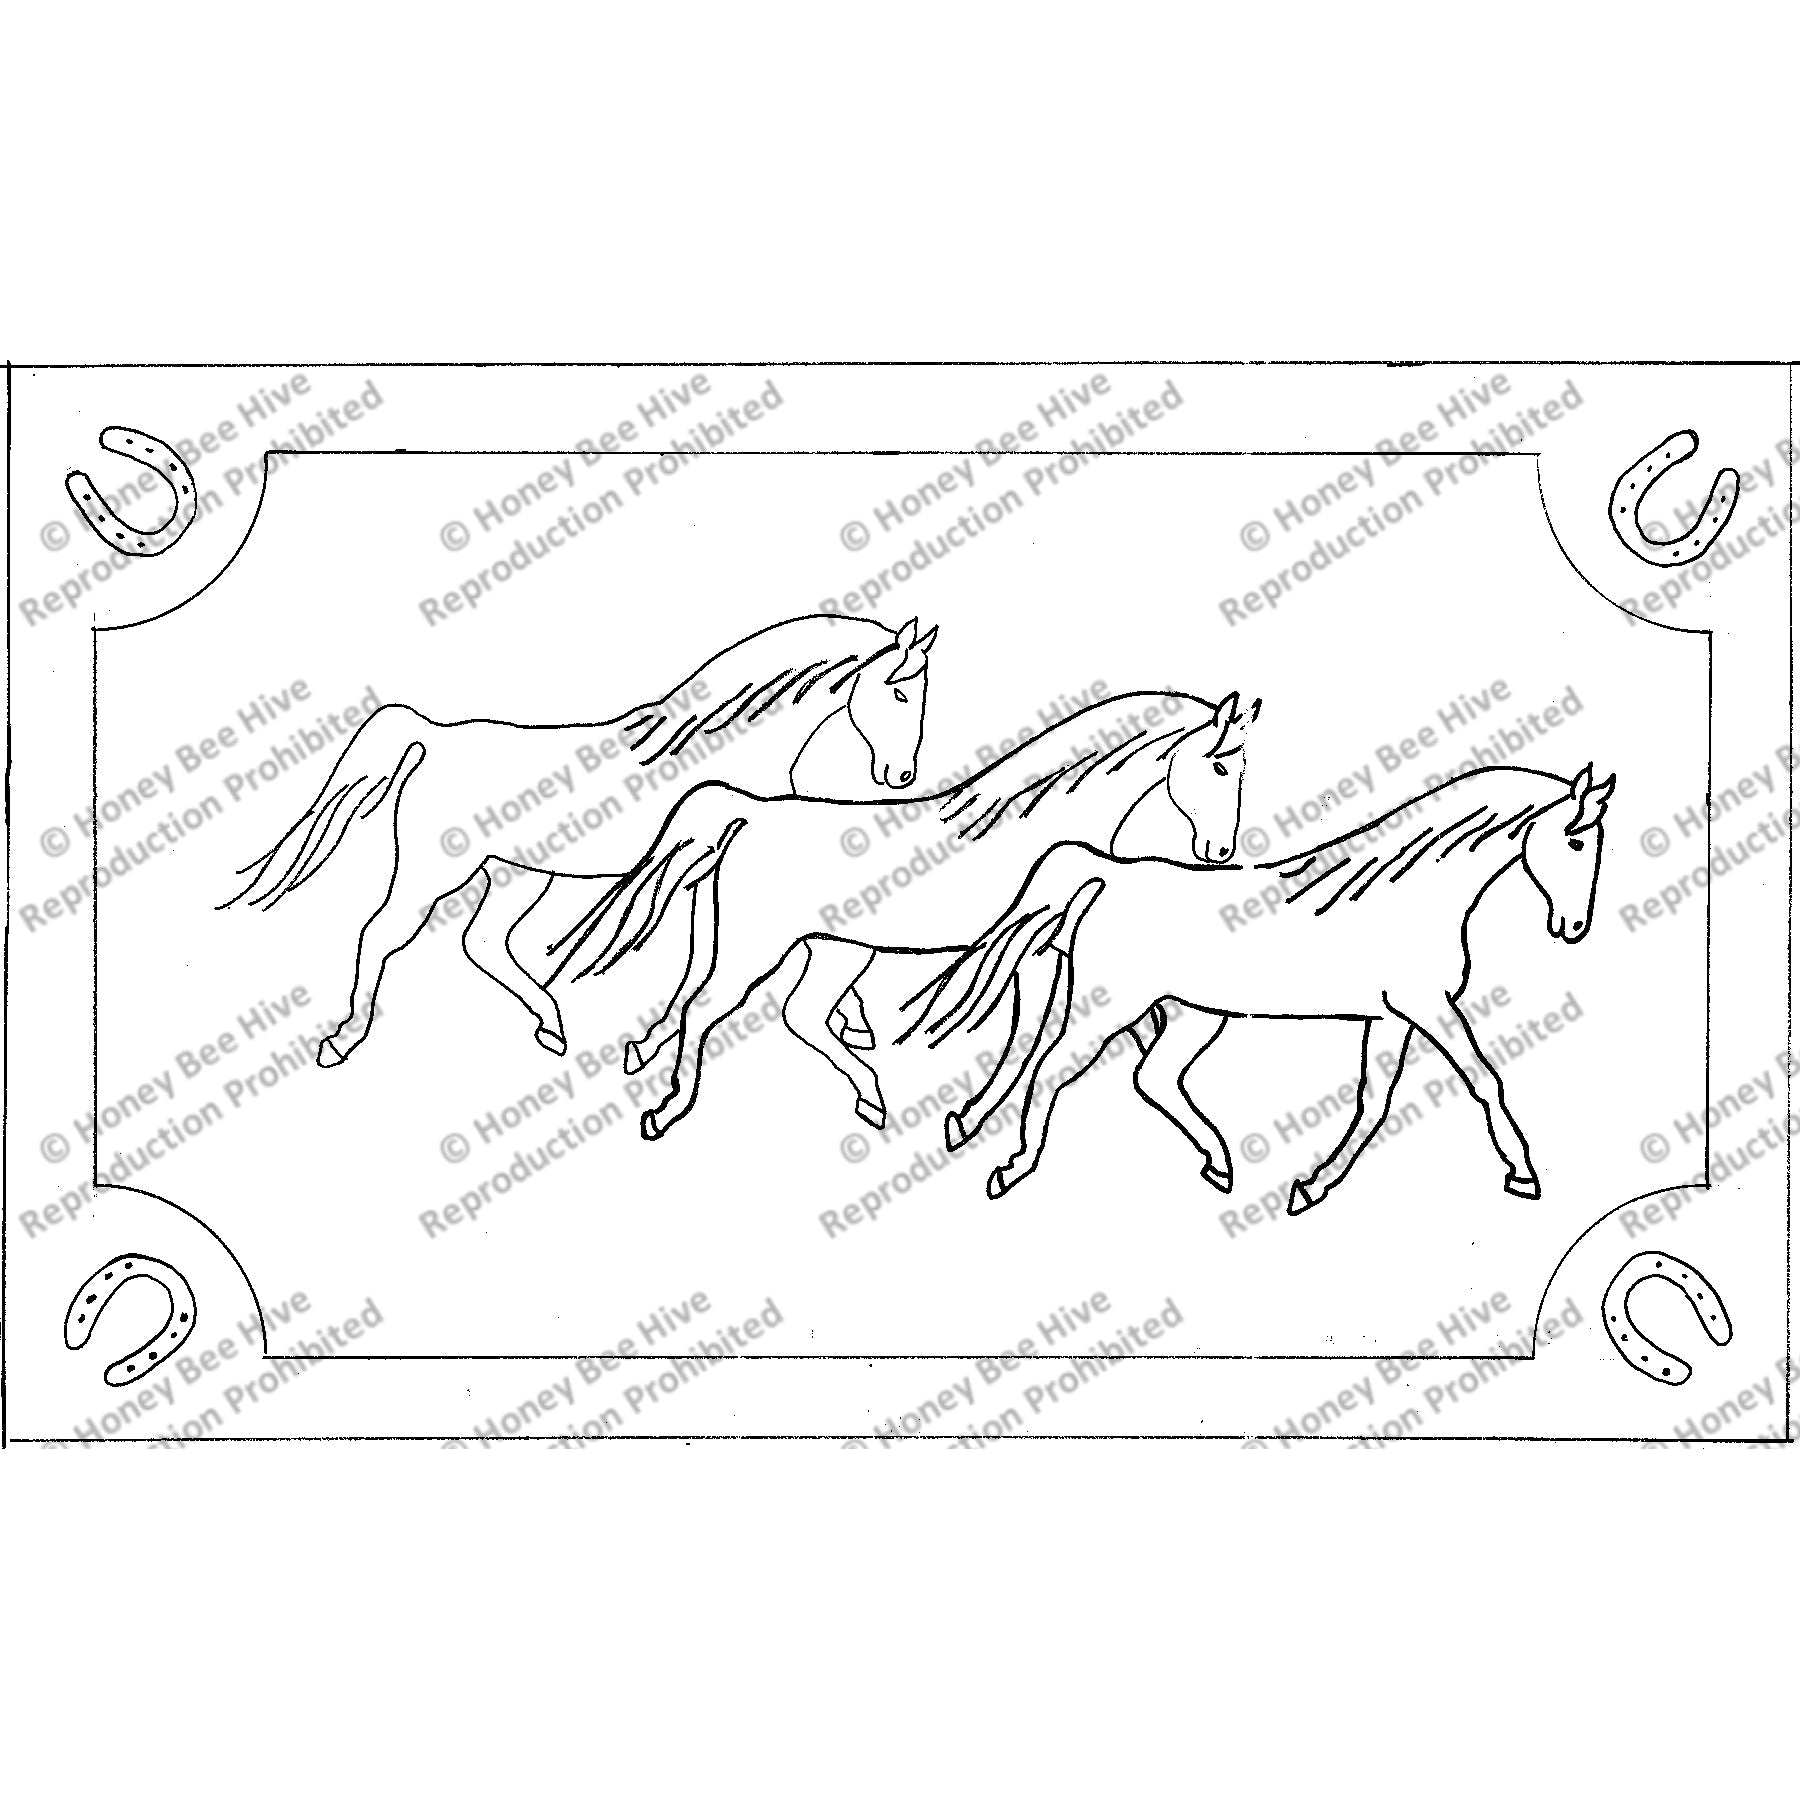 Horses, rug hooking pattern